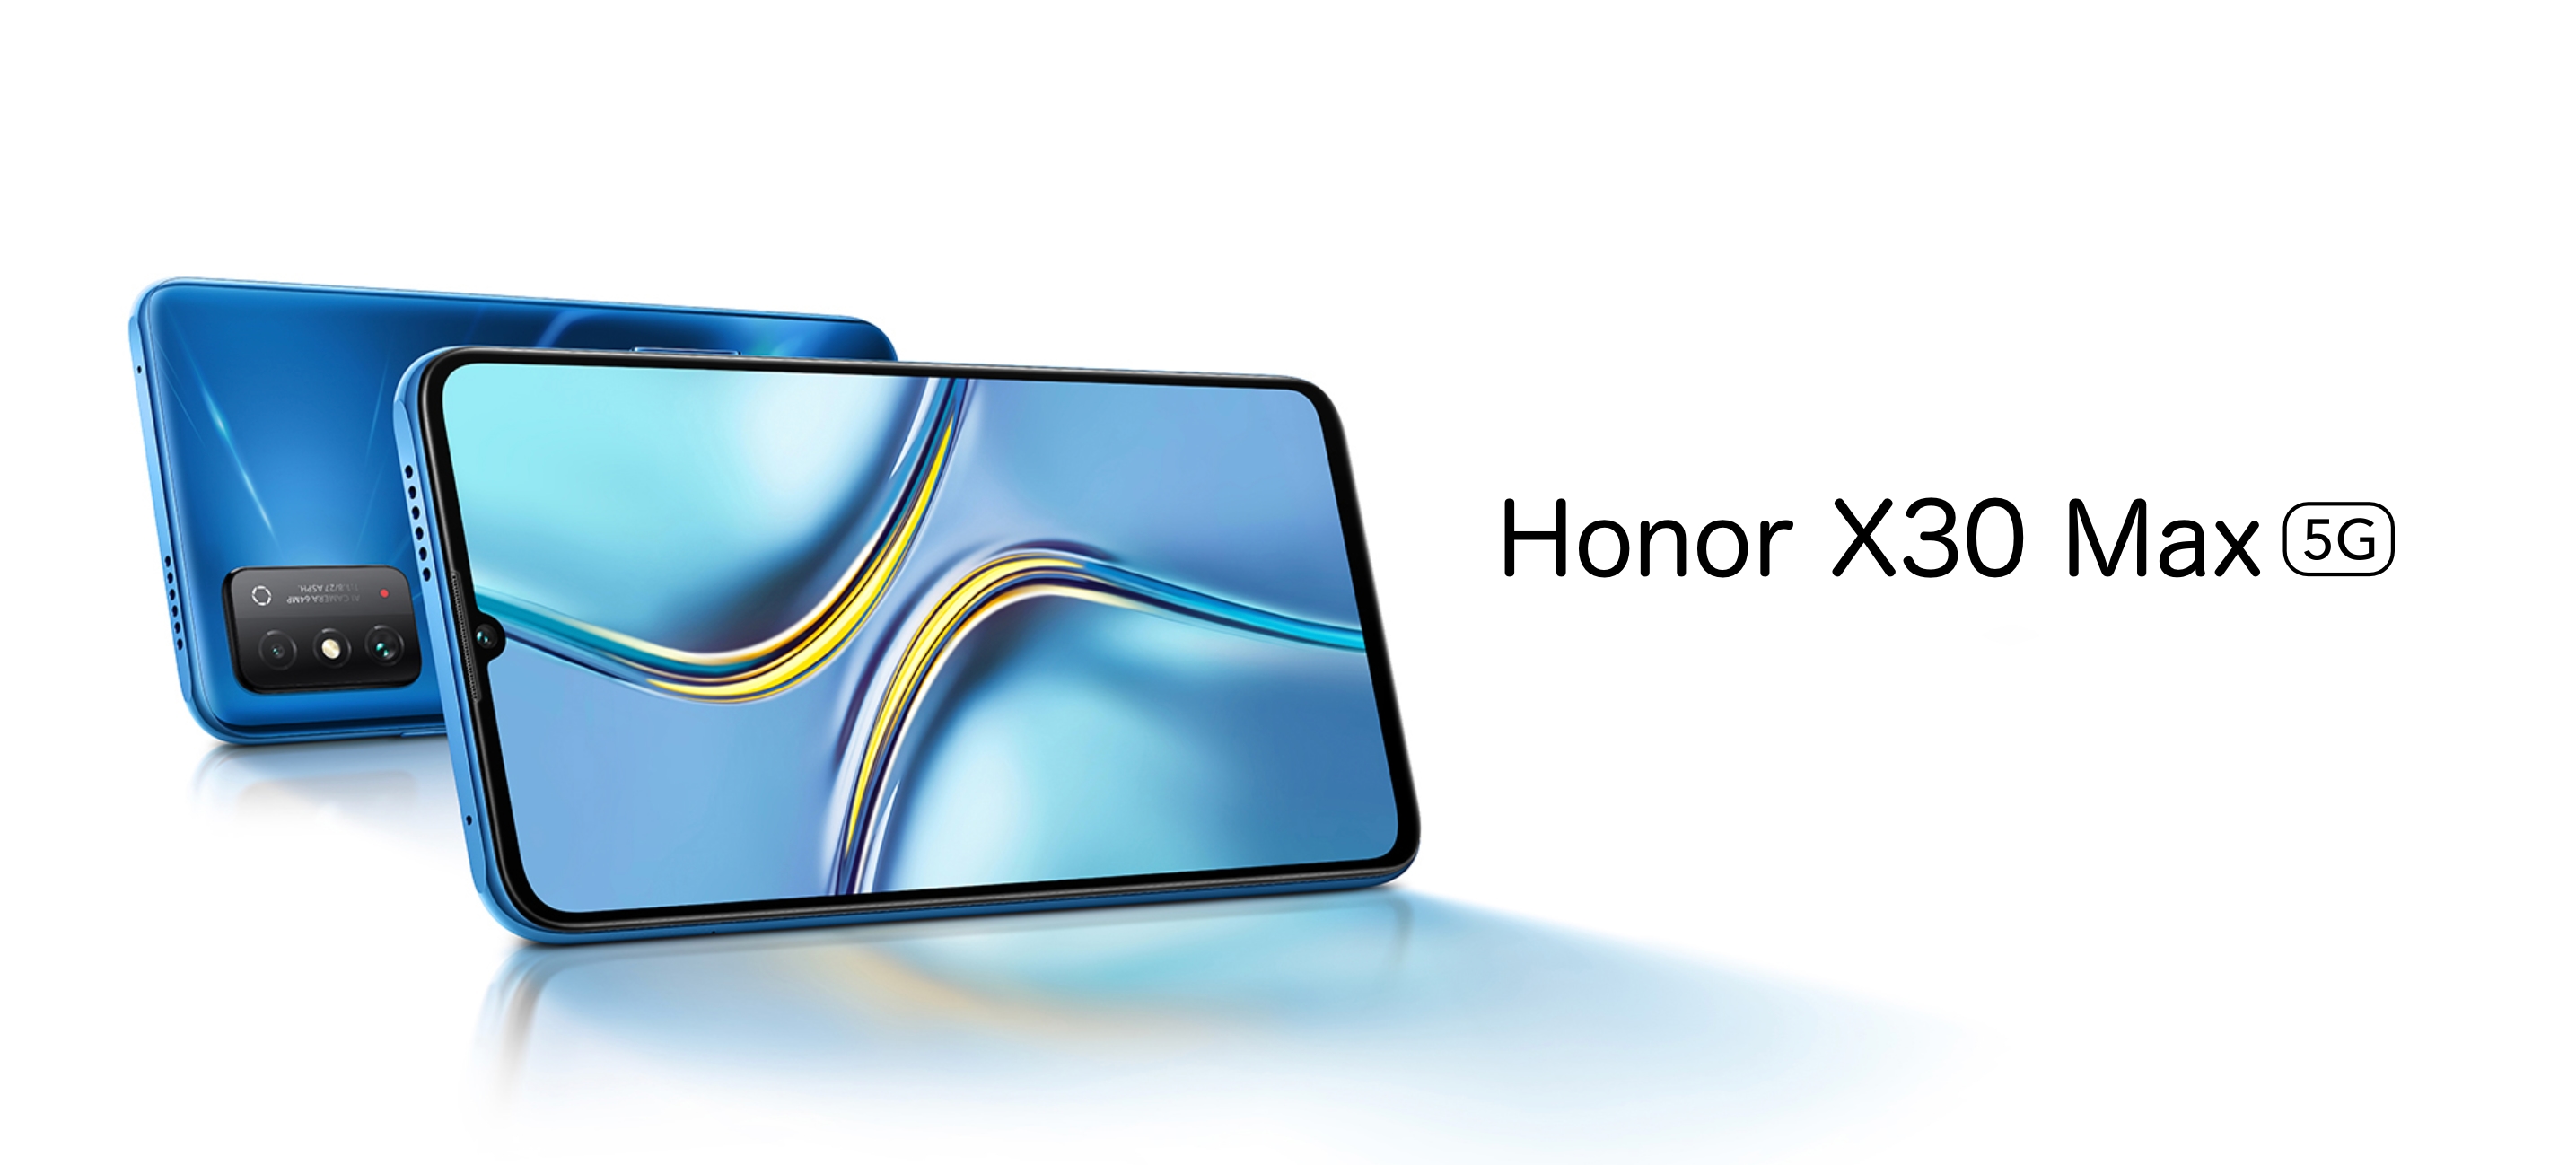 Honor X30 Max: Smartphone mit 7,09-Zoll-Bildschirm und MediaTek Dimensity 900 Chip für 375 Dollar